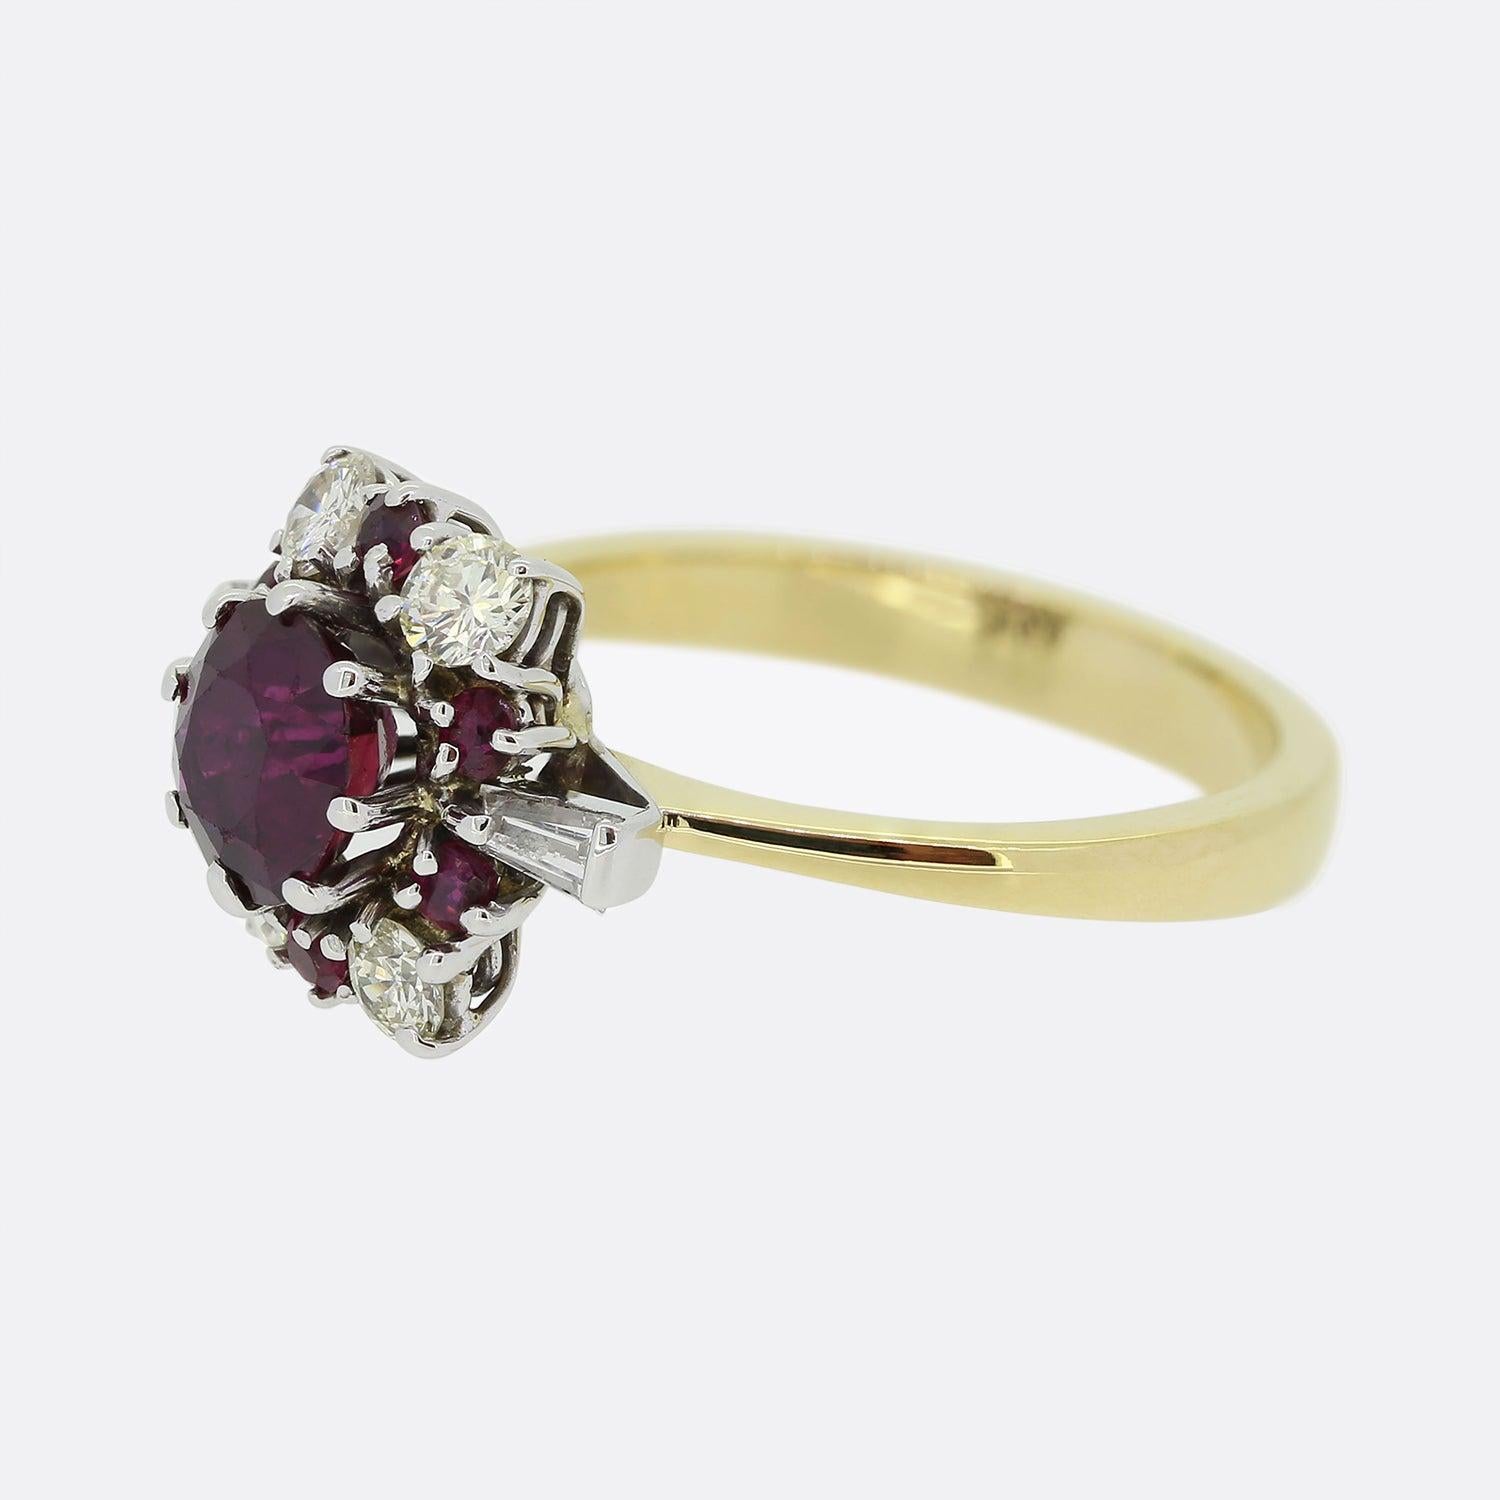 Hier haben wir einen Vintage-Ring mit einem Rubin und einem Diamanten im Cluster. Ein runder Rubin von 1,00 ct. mit einem kräftigen, satten Rotton sitzt leicht erhöht in der Mitte und ist von sechs passenden kleineren Steinen und vier runden